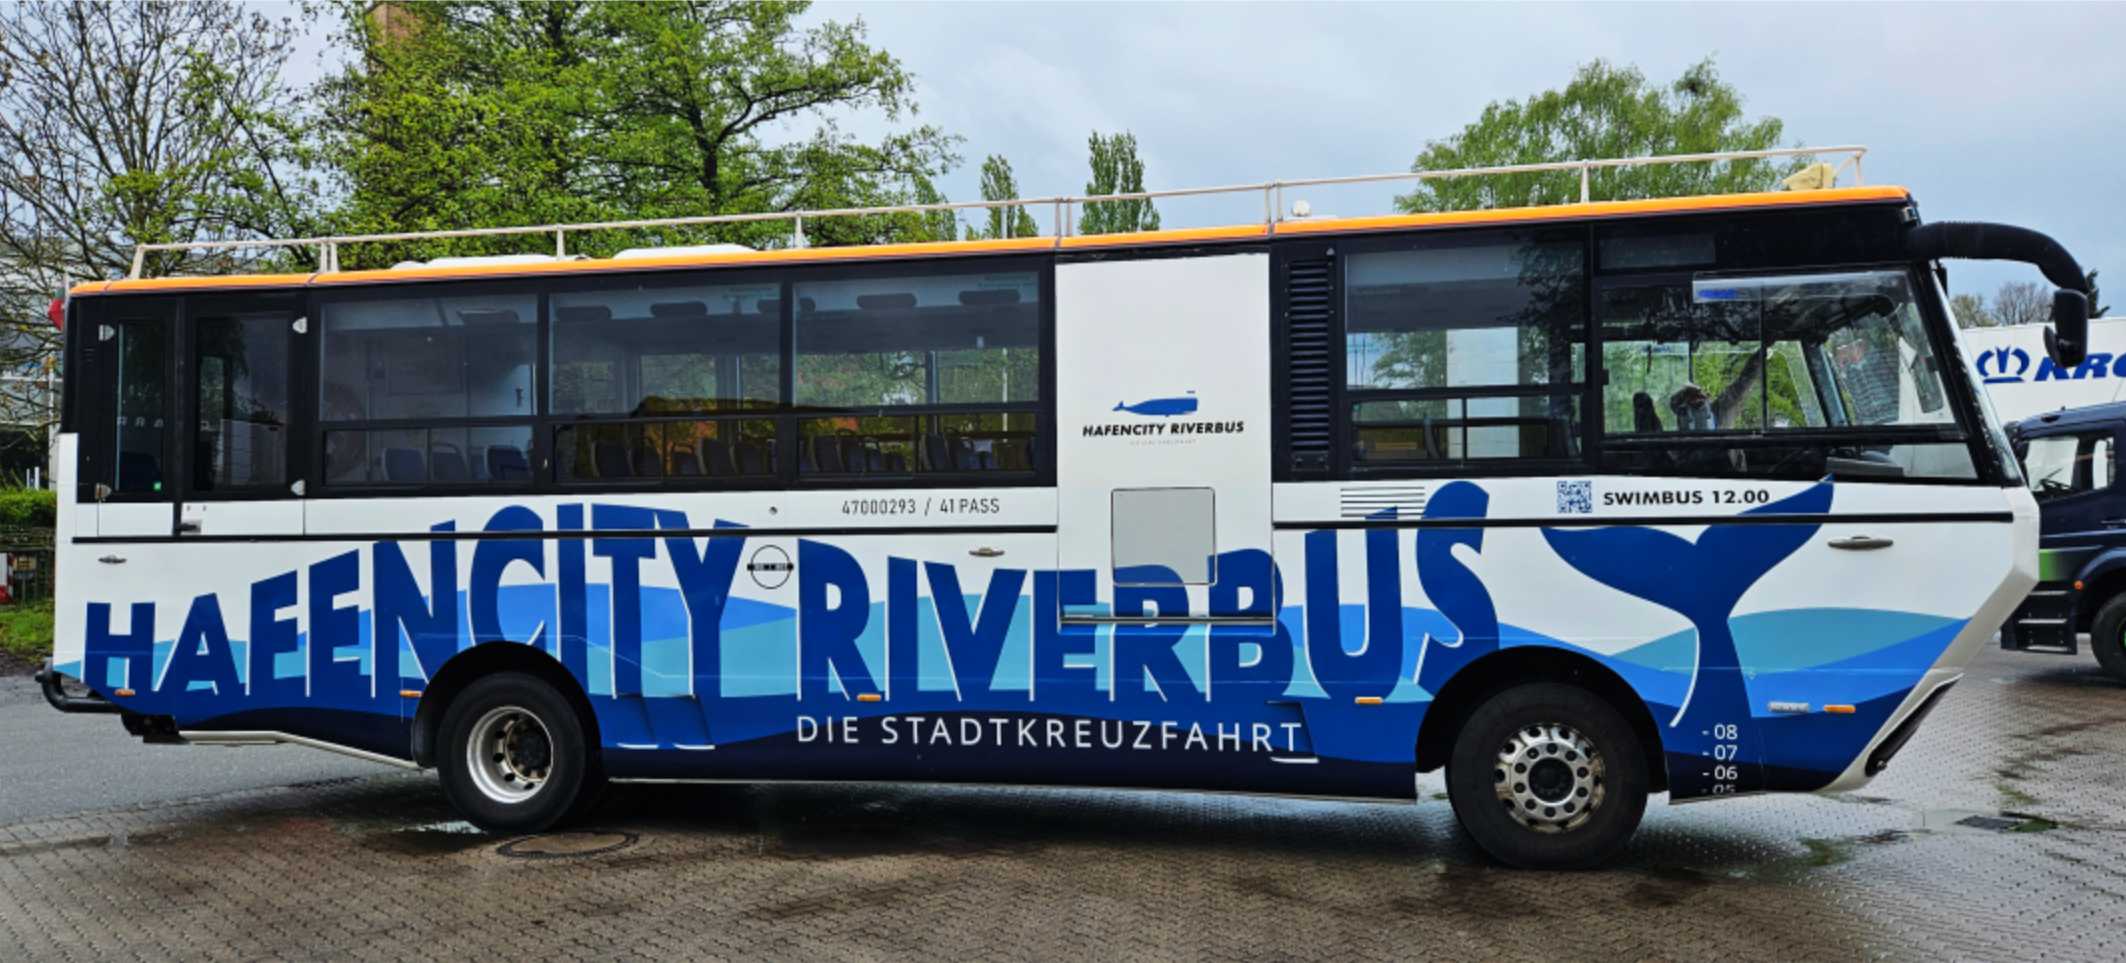 SH Werbung Riverbus-Beschriftung mit Digitaldruk